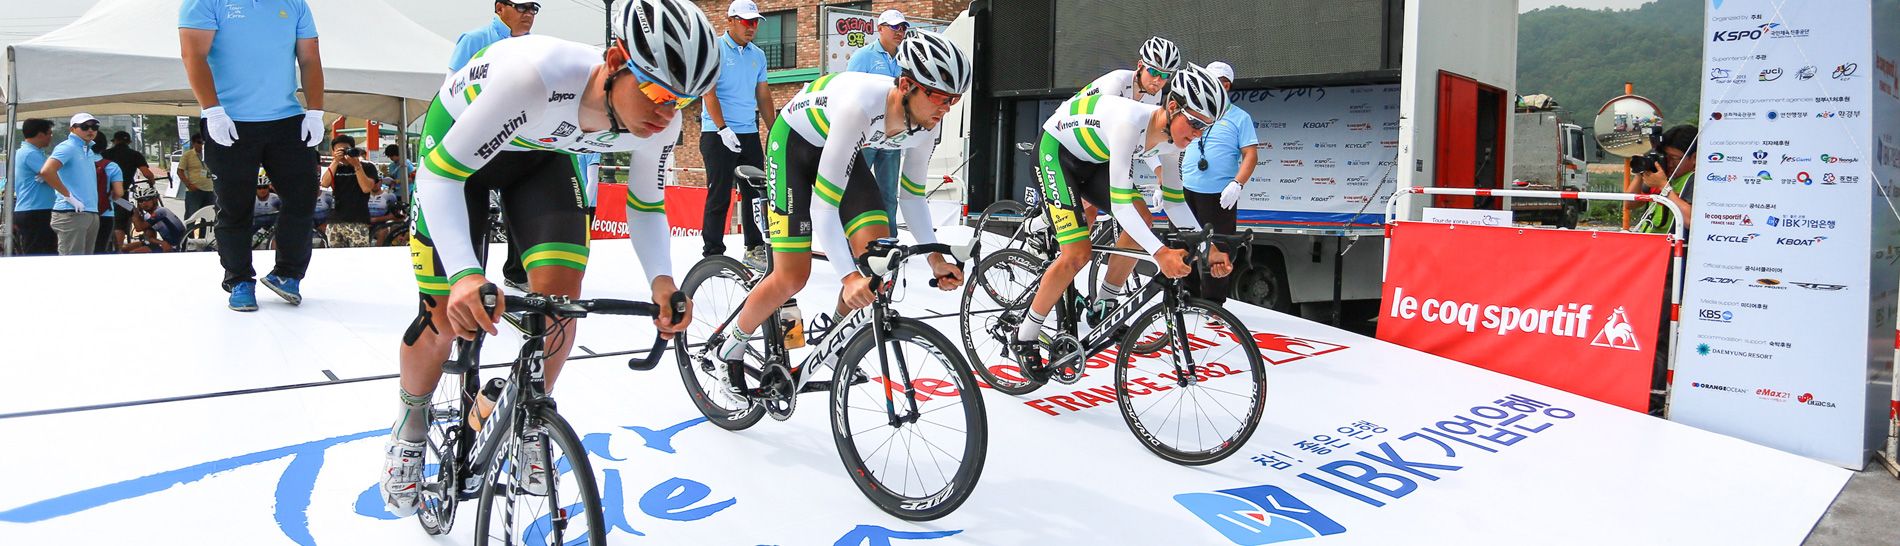 Tour de Korea: riders set to go